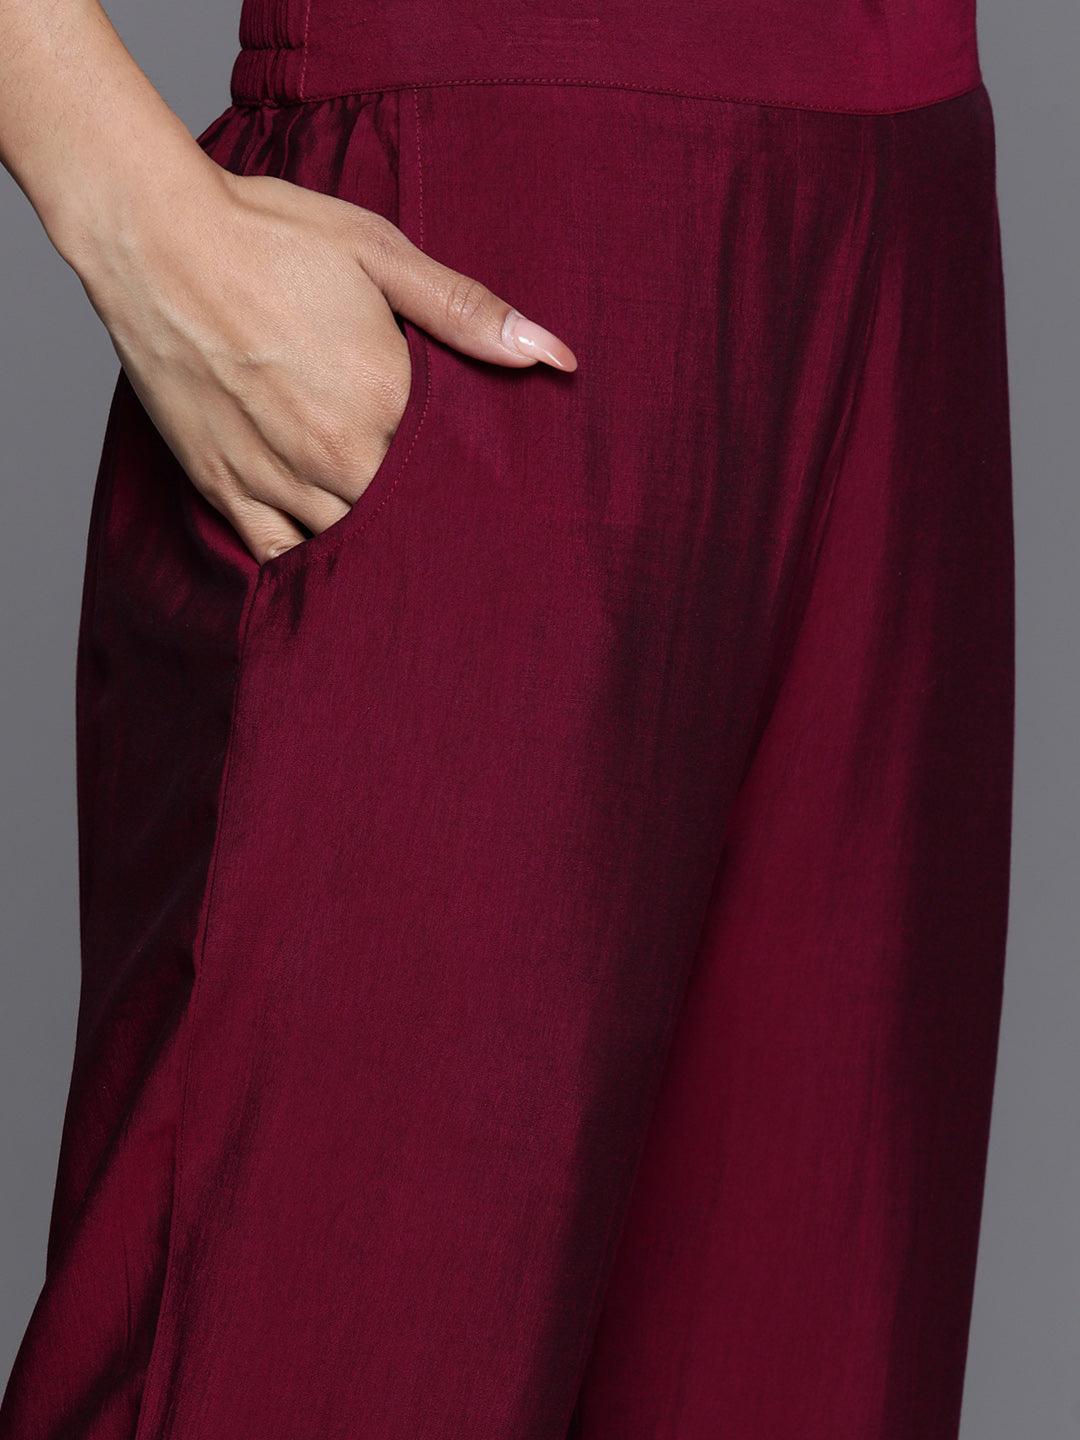 Burgundy Yoke Design Silk Blend Straight Kurta With Dupatta